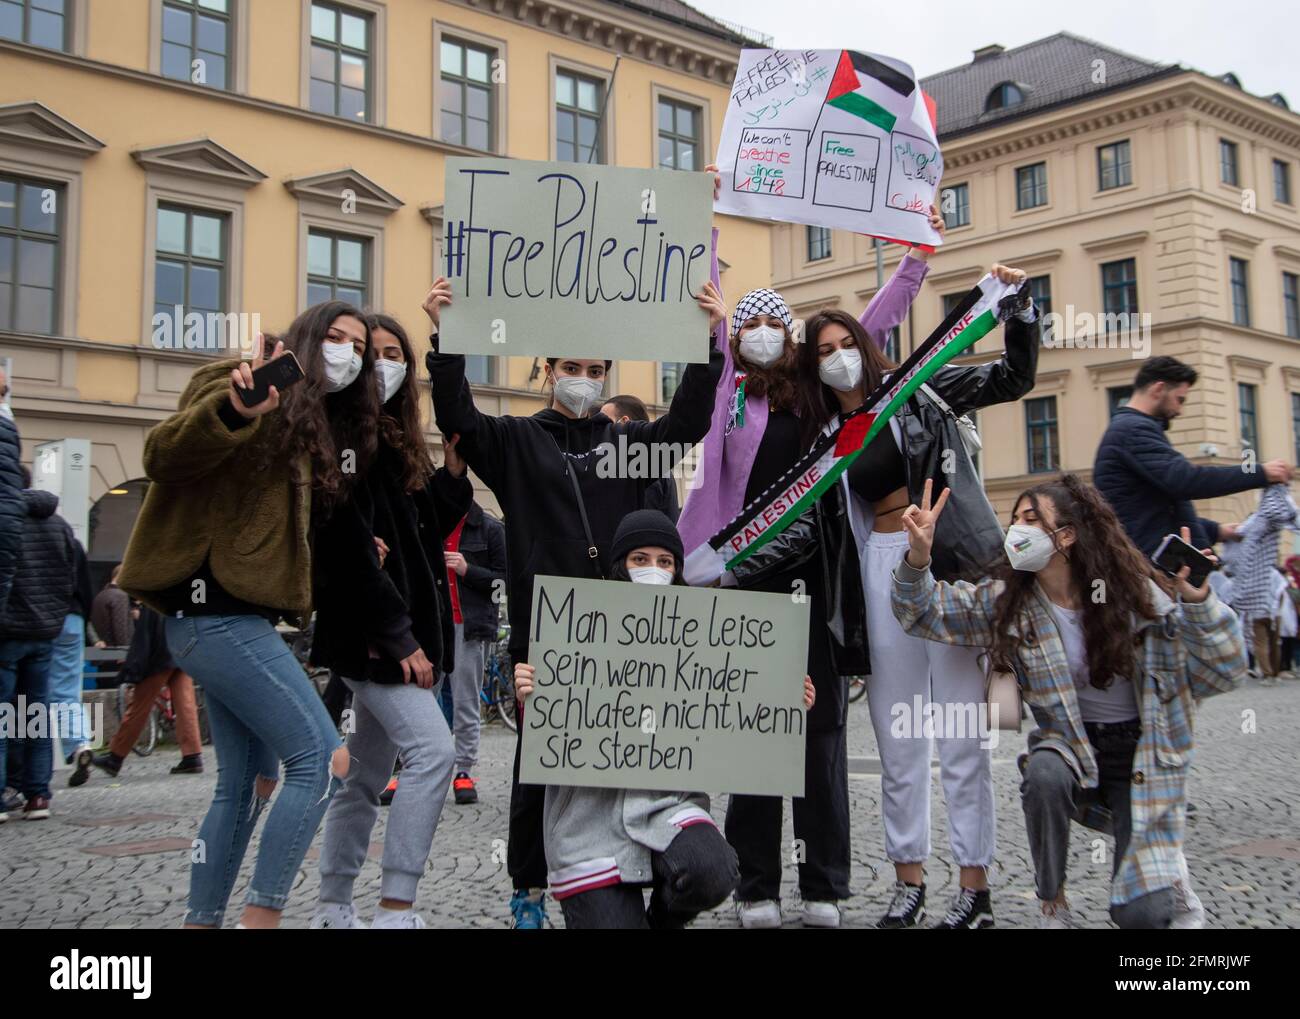 Gruppe von Demonstrantinnen halten Schilder mit der Aufschrift: ' #FreePalestine ', ' man sollte leise sein, wenn Kinder schlafen, nicht, wenn sie sterben ', ' We can't Breathe since 1948 '. Ca. 1000 Menschen sammeln sich am 11. Mai in München spontan, um ihre Solidarität mit den palästinischen Demonstrant*innen in Jerusalem zu zeigen. Da deutlich mehr Menschen als zur Sammlung kamen, müssen die Polizei sie auf. The Demonstrant*innen verschließen friedlich die Kundgebung. * eine Gruppe von Demonstranten hält Schilder mit der Aufschrift: ' #FreePalestine ', ' Sie sollten ruhig sein, wenn Kind Stockfoto